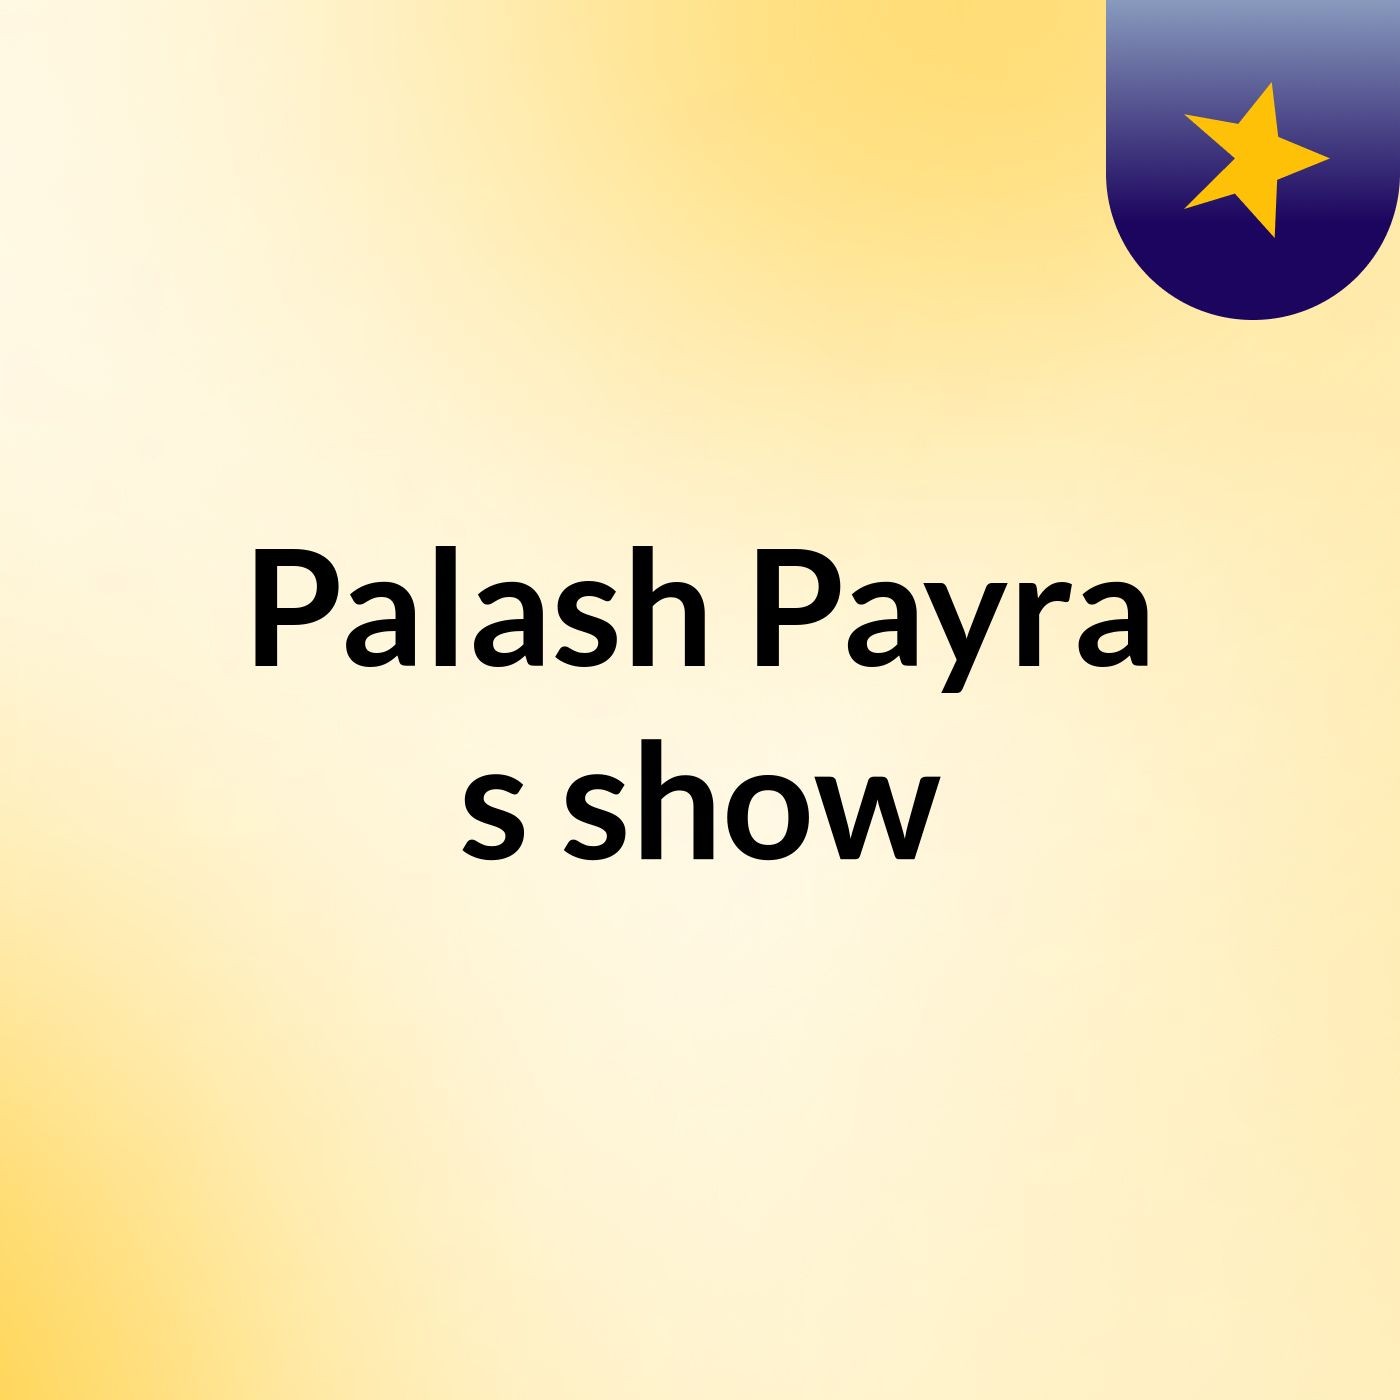 Palash Payra's show